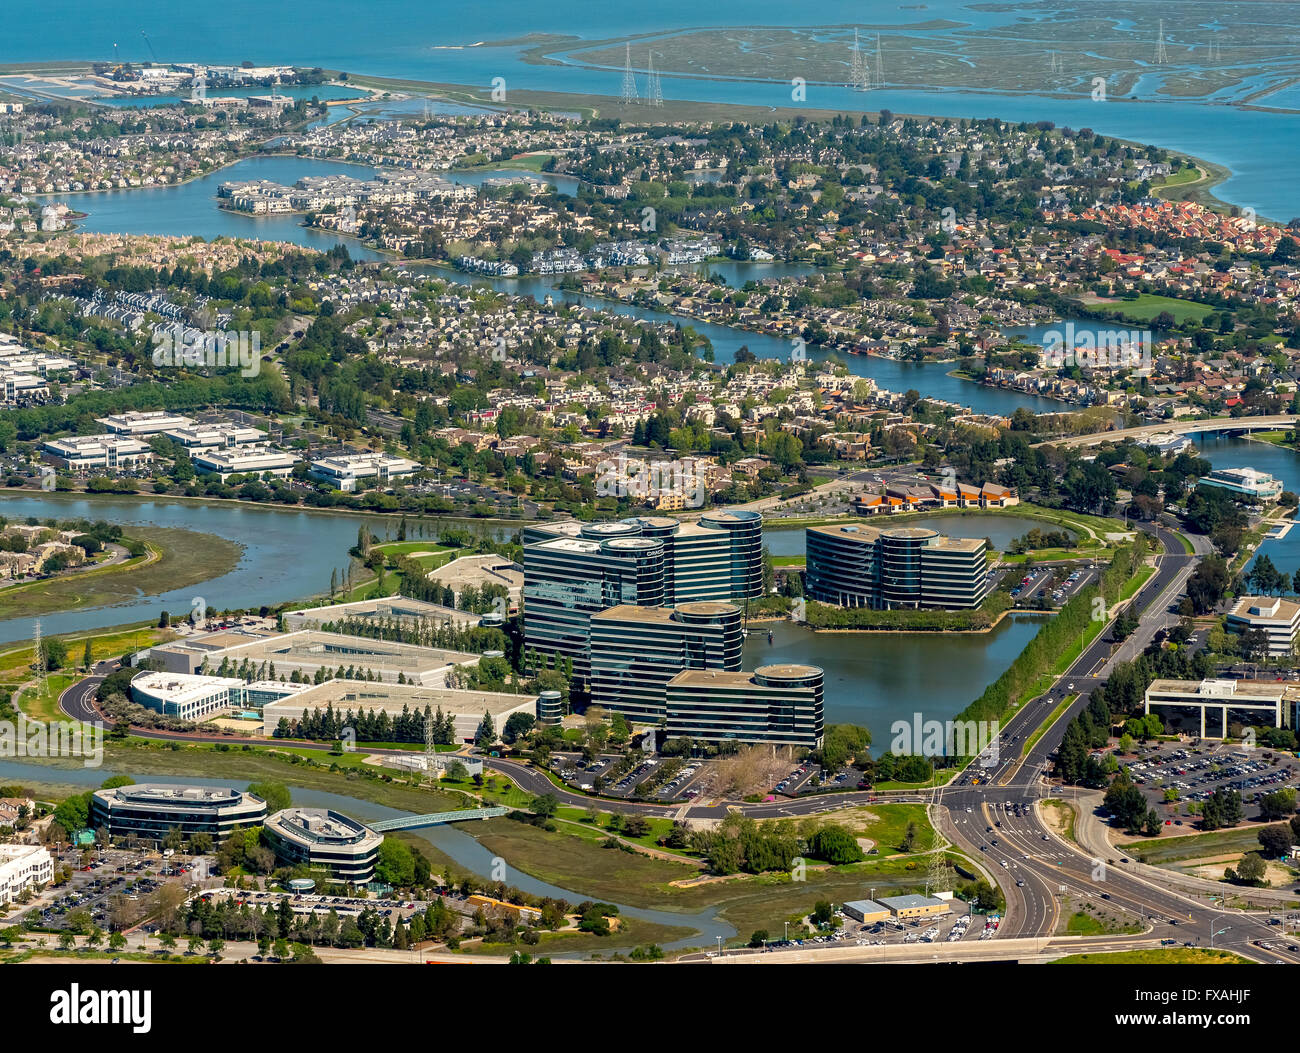 La sede de Oracle en Redwood Shores, Silicon Valley, California, EE.UU. Foto de stock